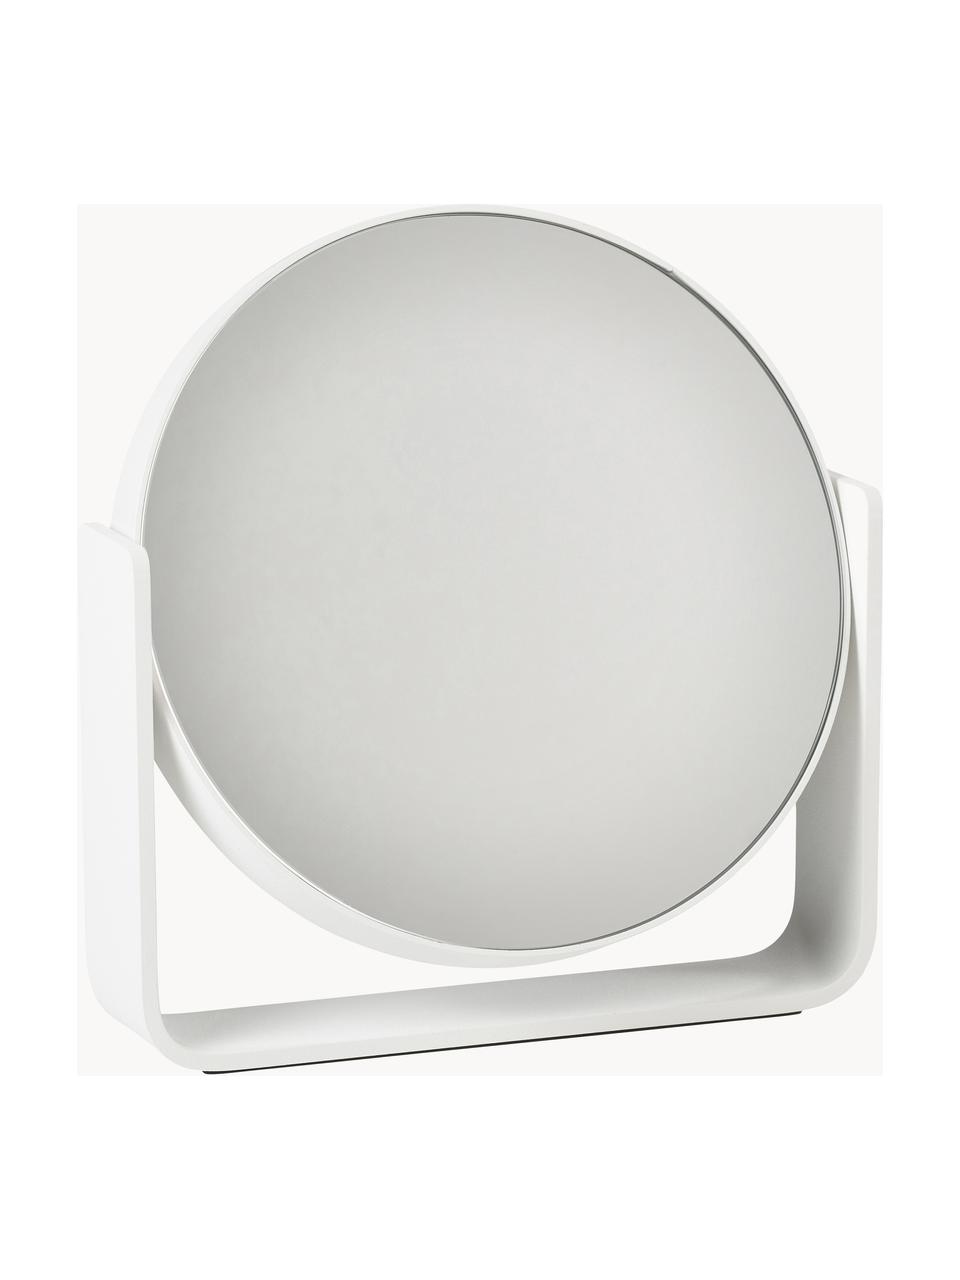 Runder Kosmetikspiegel Ume mit Vergrößerung, Weiß, B 19 x H 20 cm